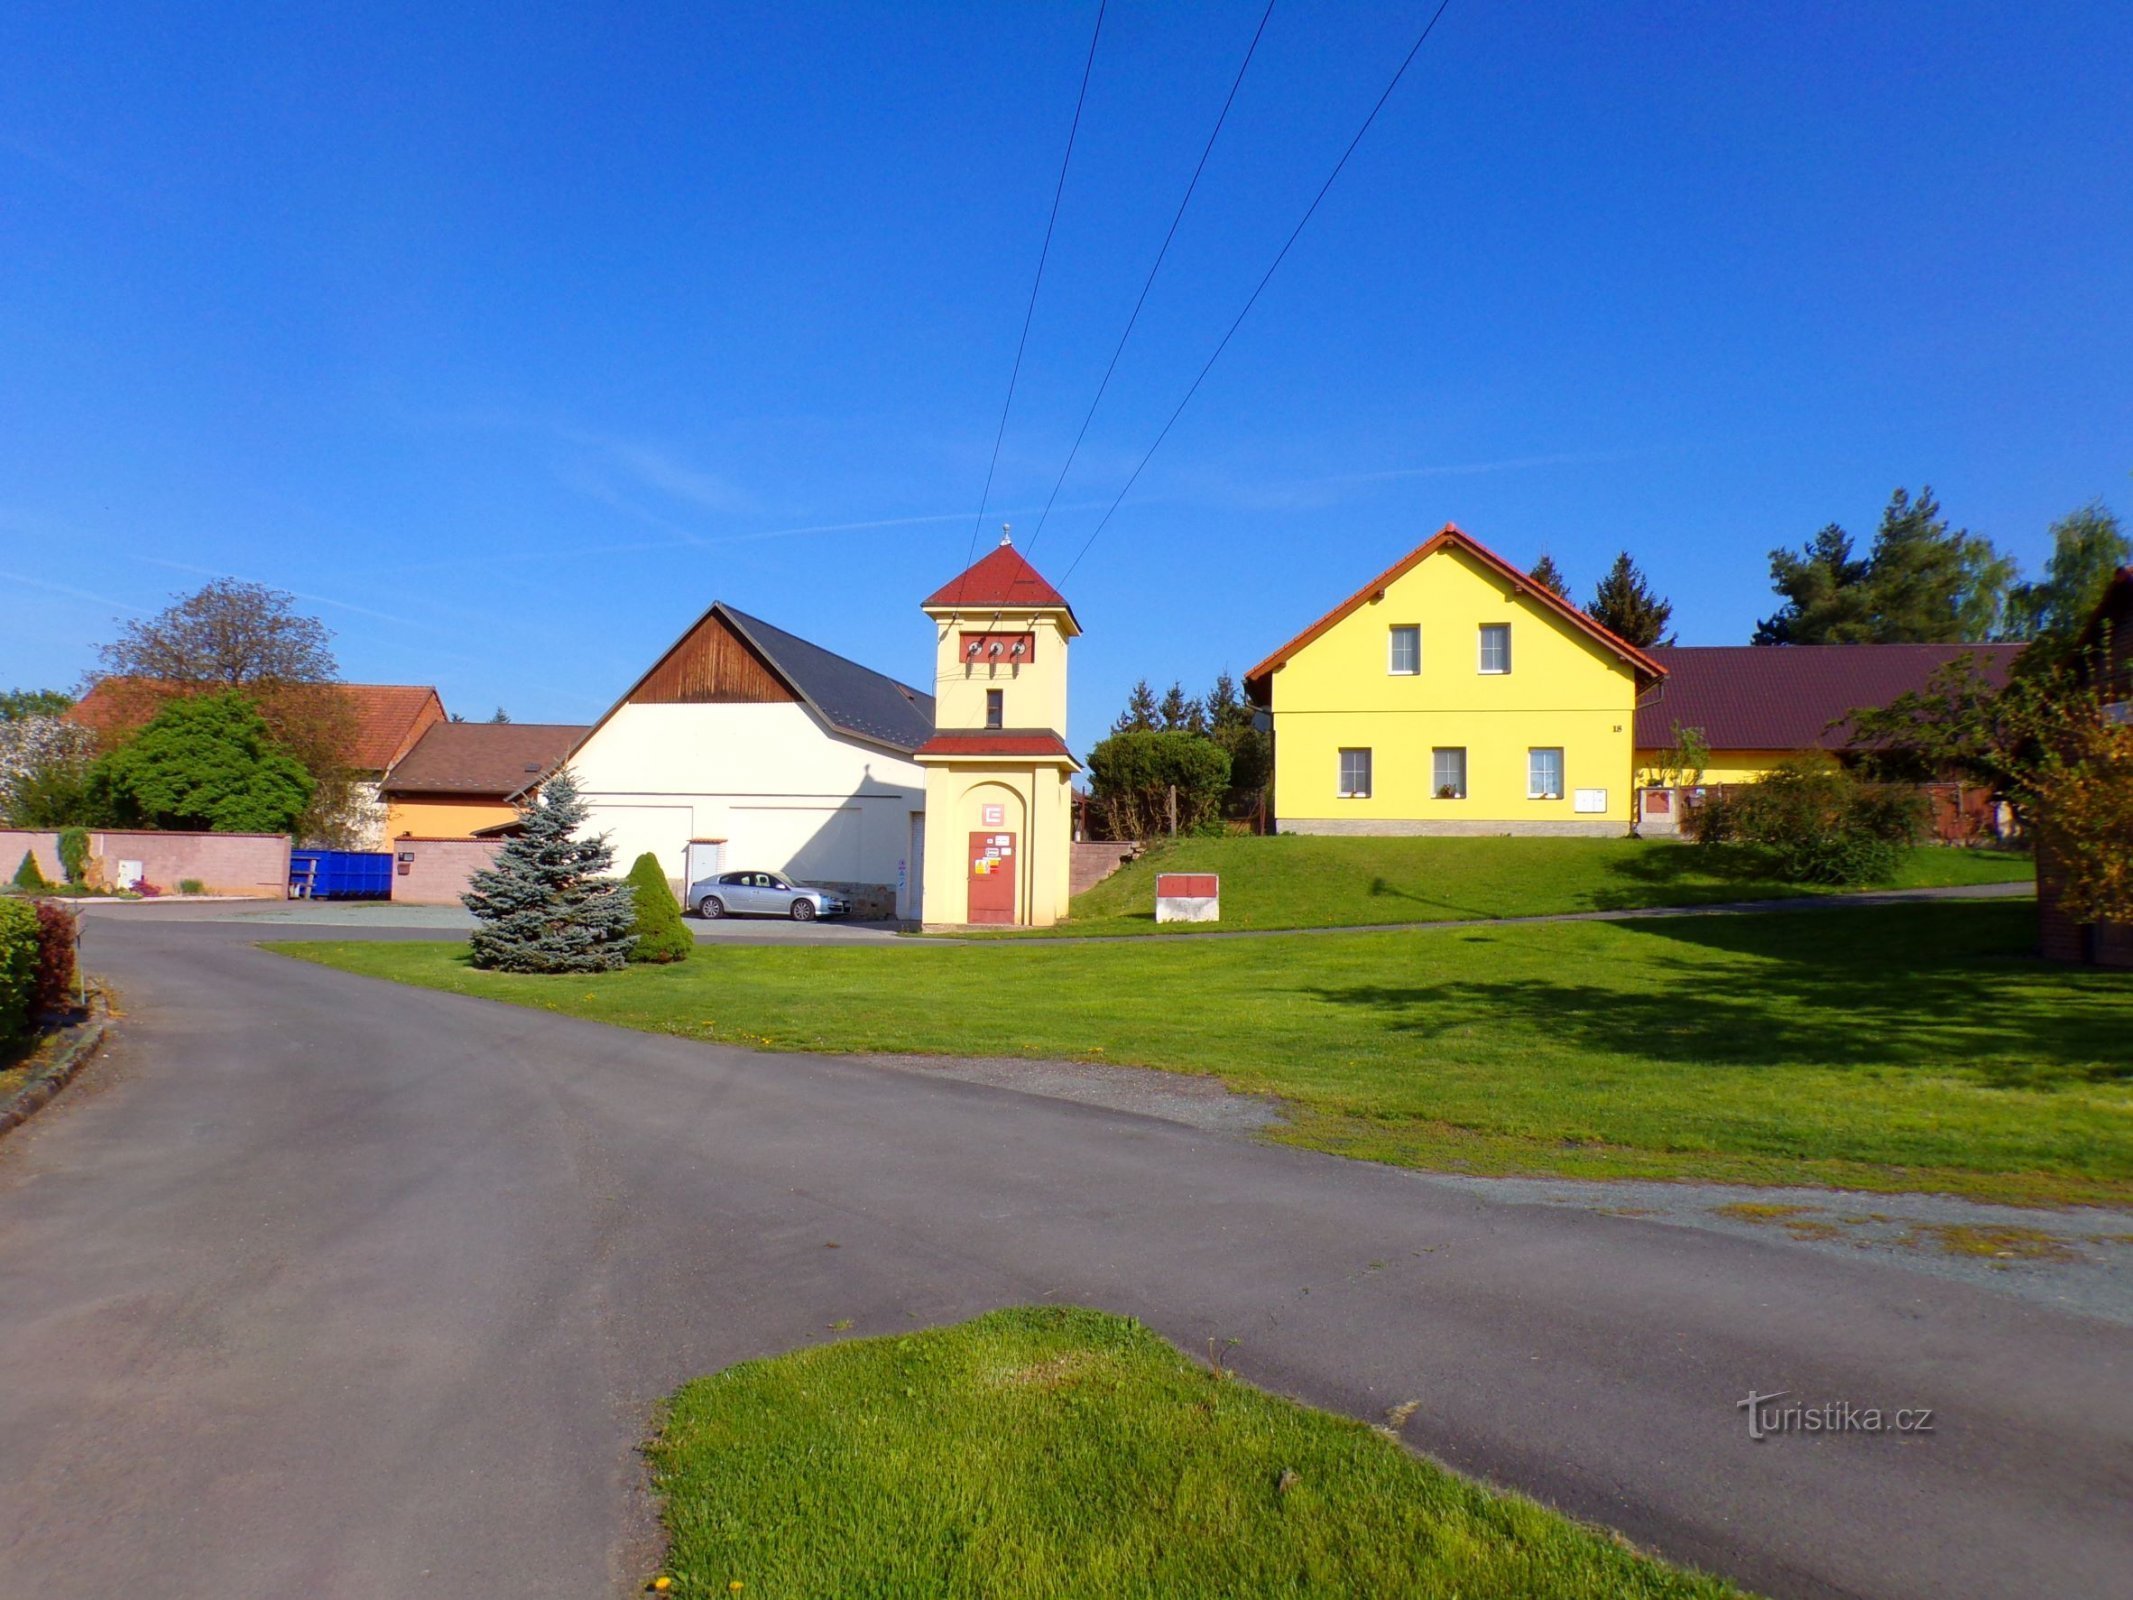 Μέρος του χωριού (Čáslavky, 8.5.2022 Μαΐου XNUMX)